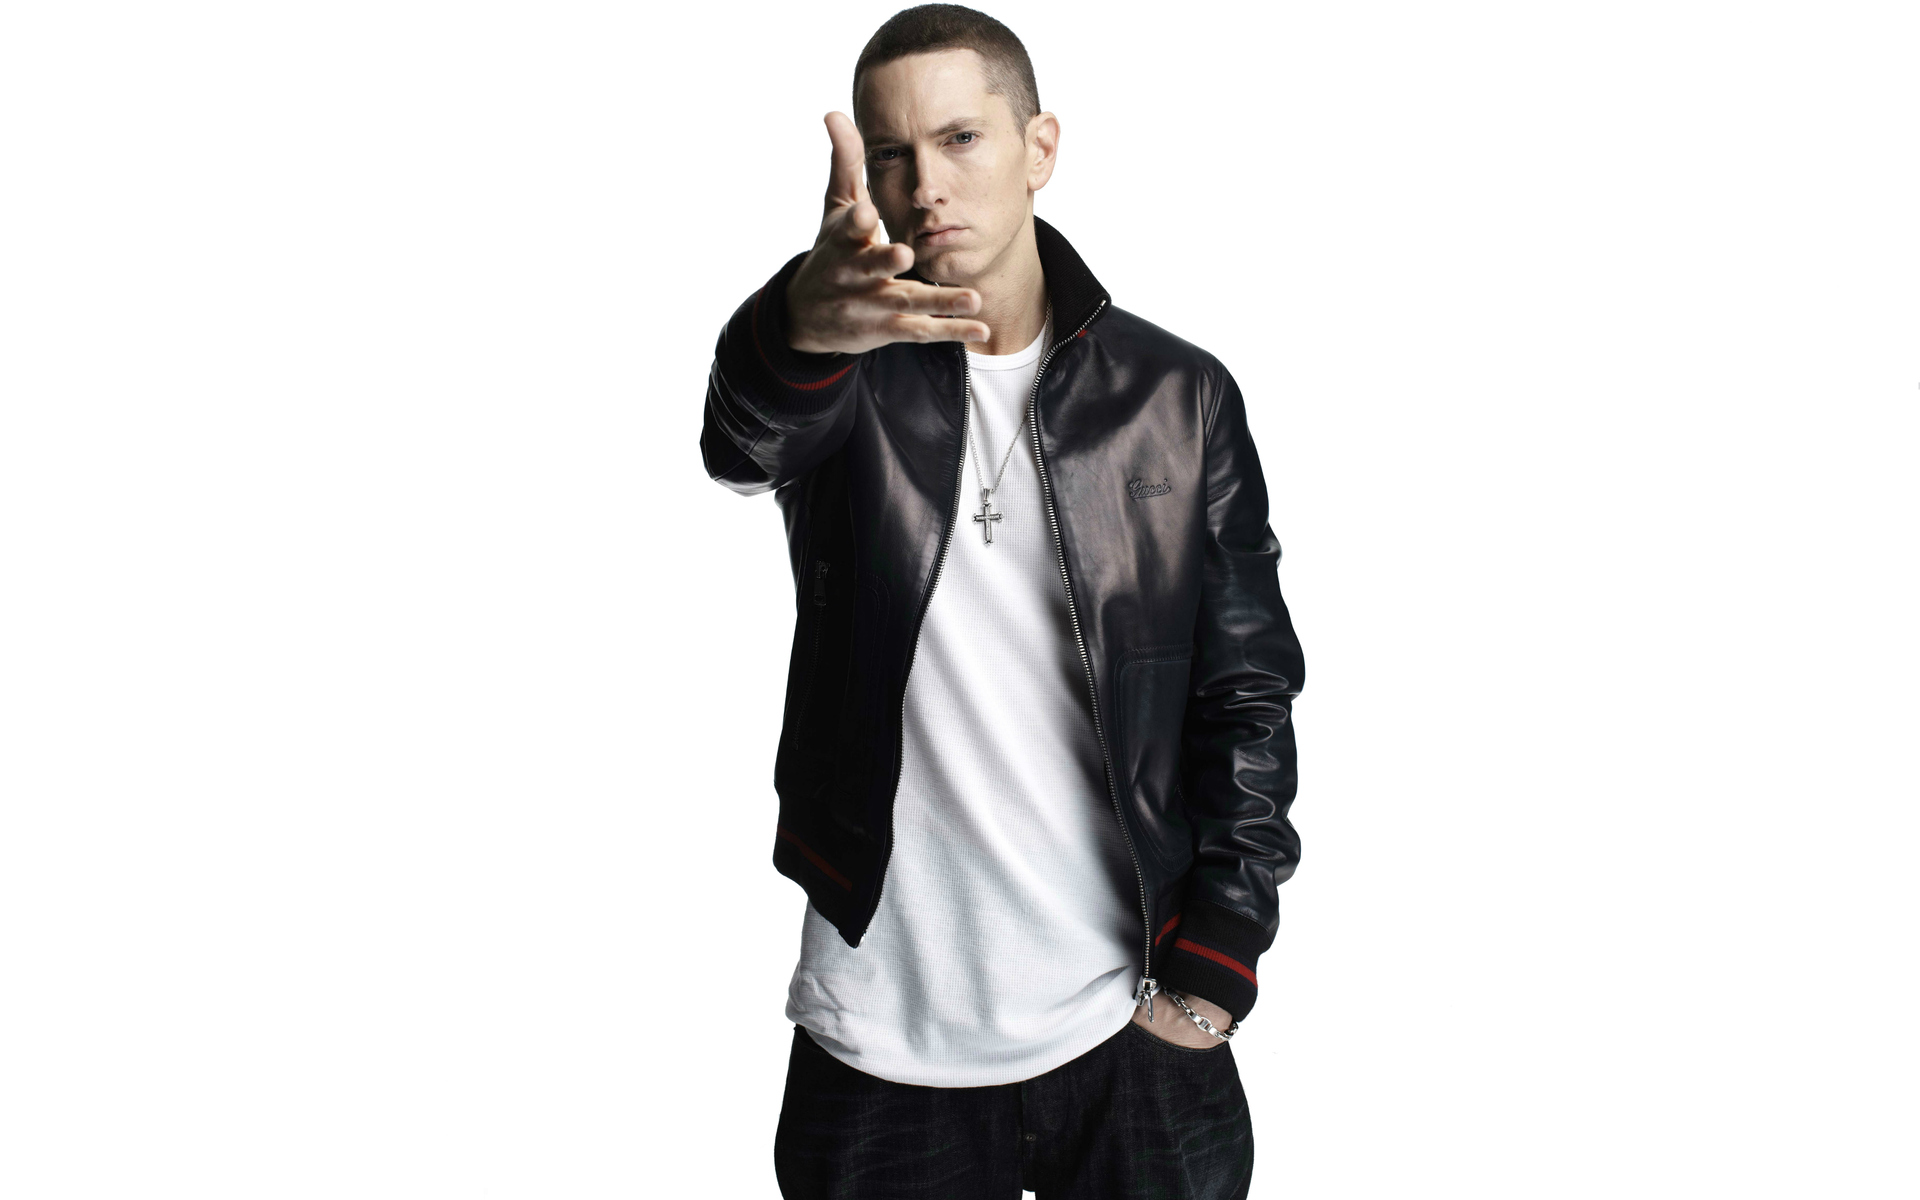 Eminem Wallpaper - Eminem Wallpapers Hd - HD Wallpaper 